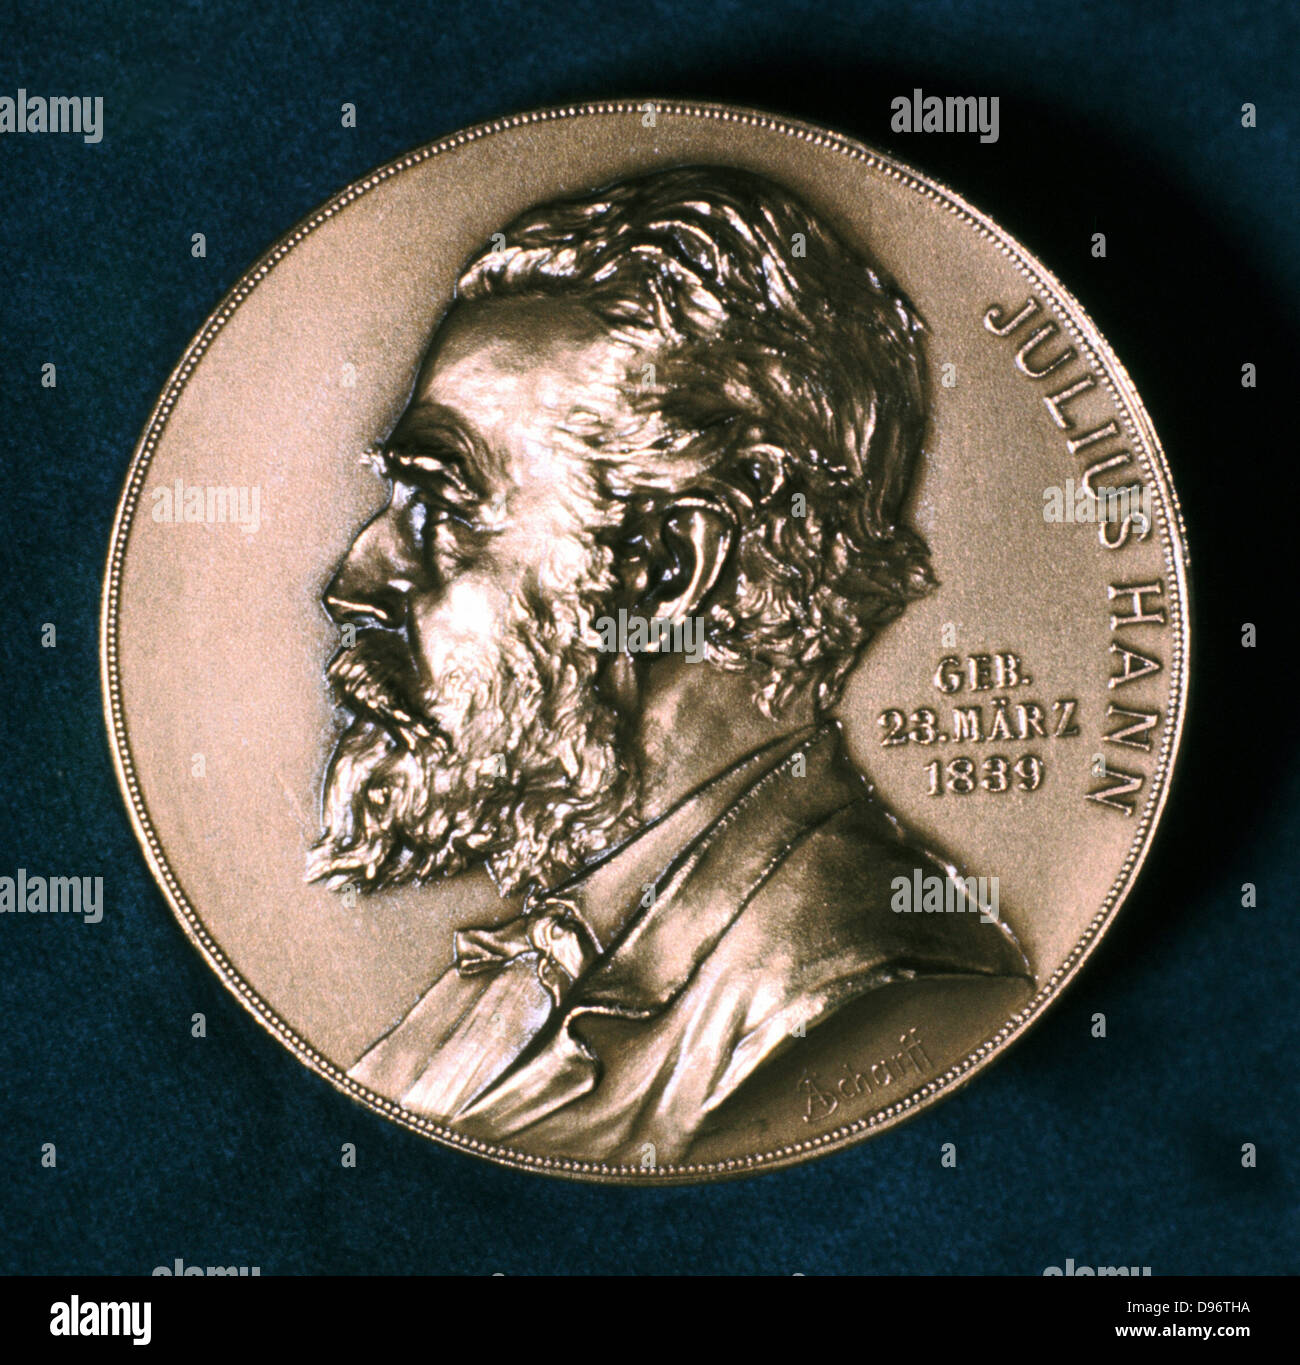 Julius Ferdinand Hann, c1921. Hann (1839-1921), météorologue de l'Autriche, à partir d'une médaille commémorative émise par l'Autrichien Meteorological Society. Banque D'Images